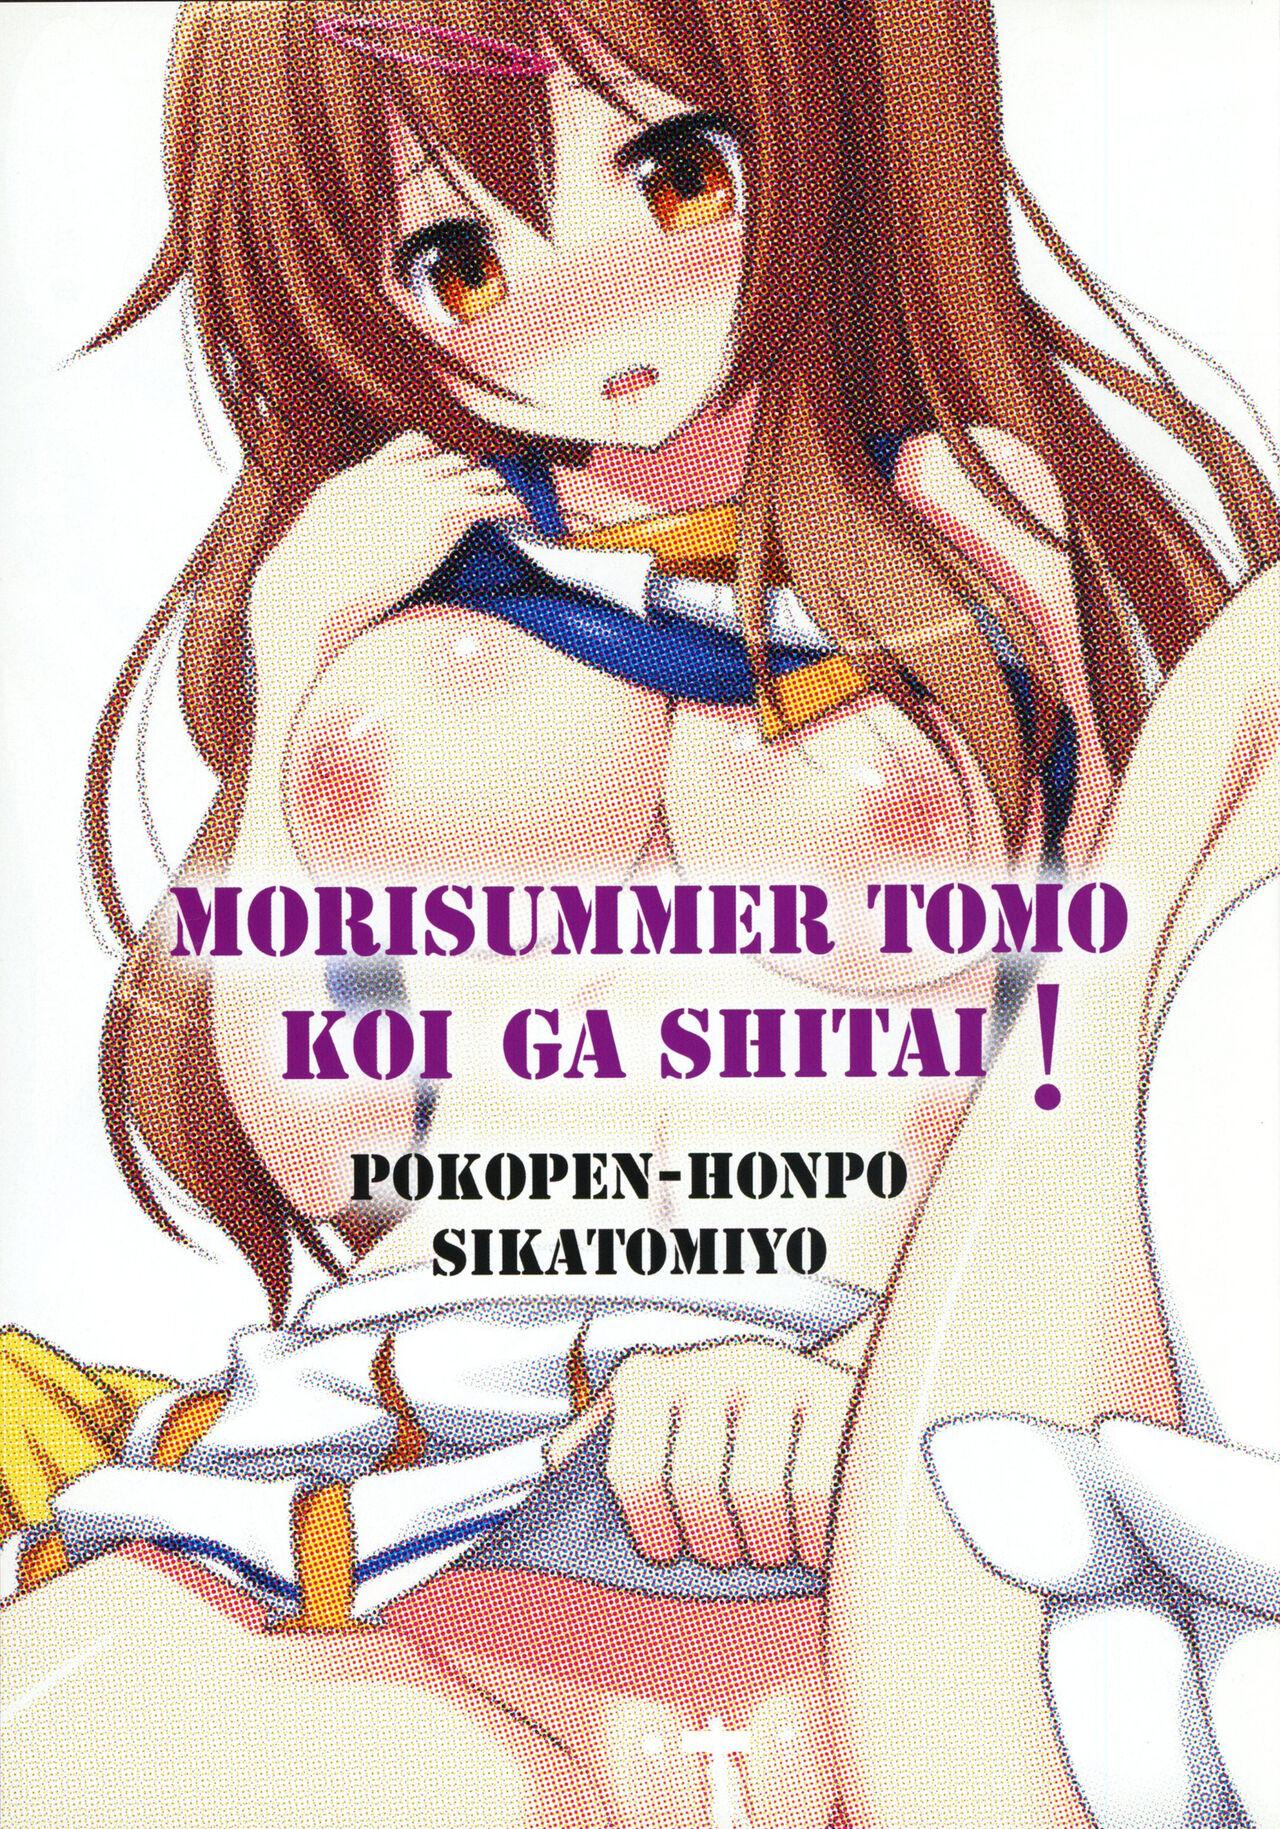 Stroking MoriSummer tomo KOI ga shitai - Chuunibyou demo koi ga shitai Funny - Picture 2